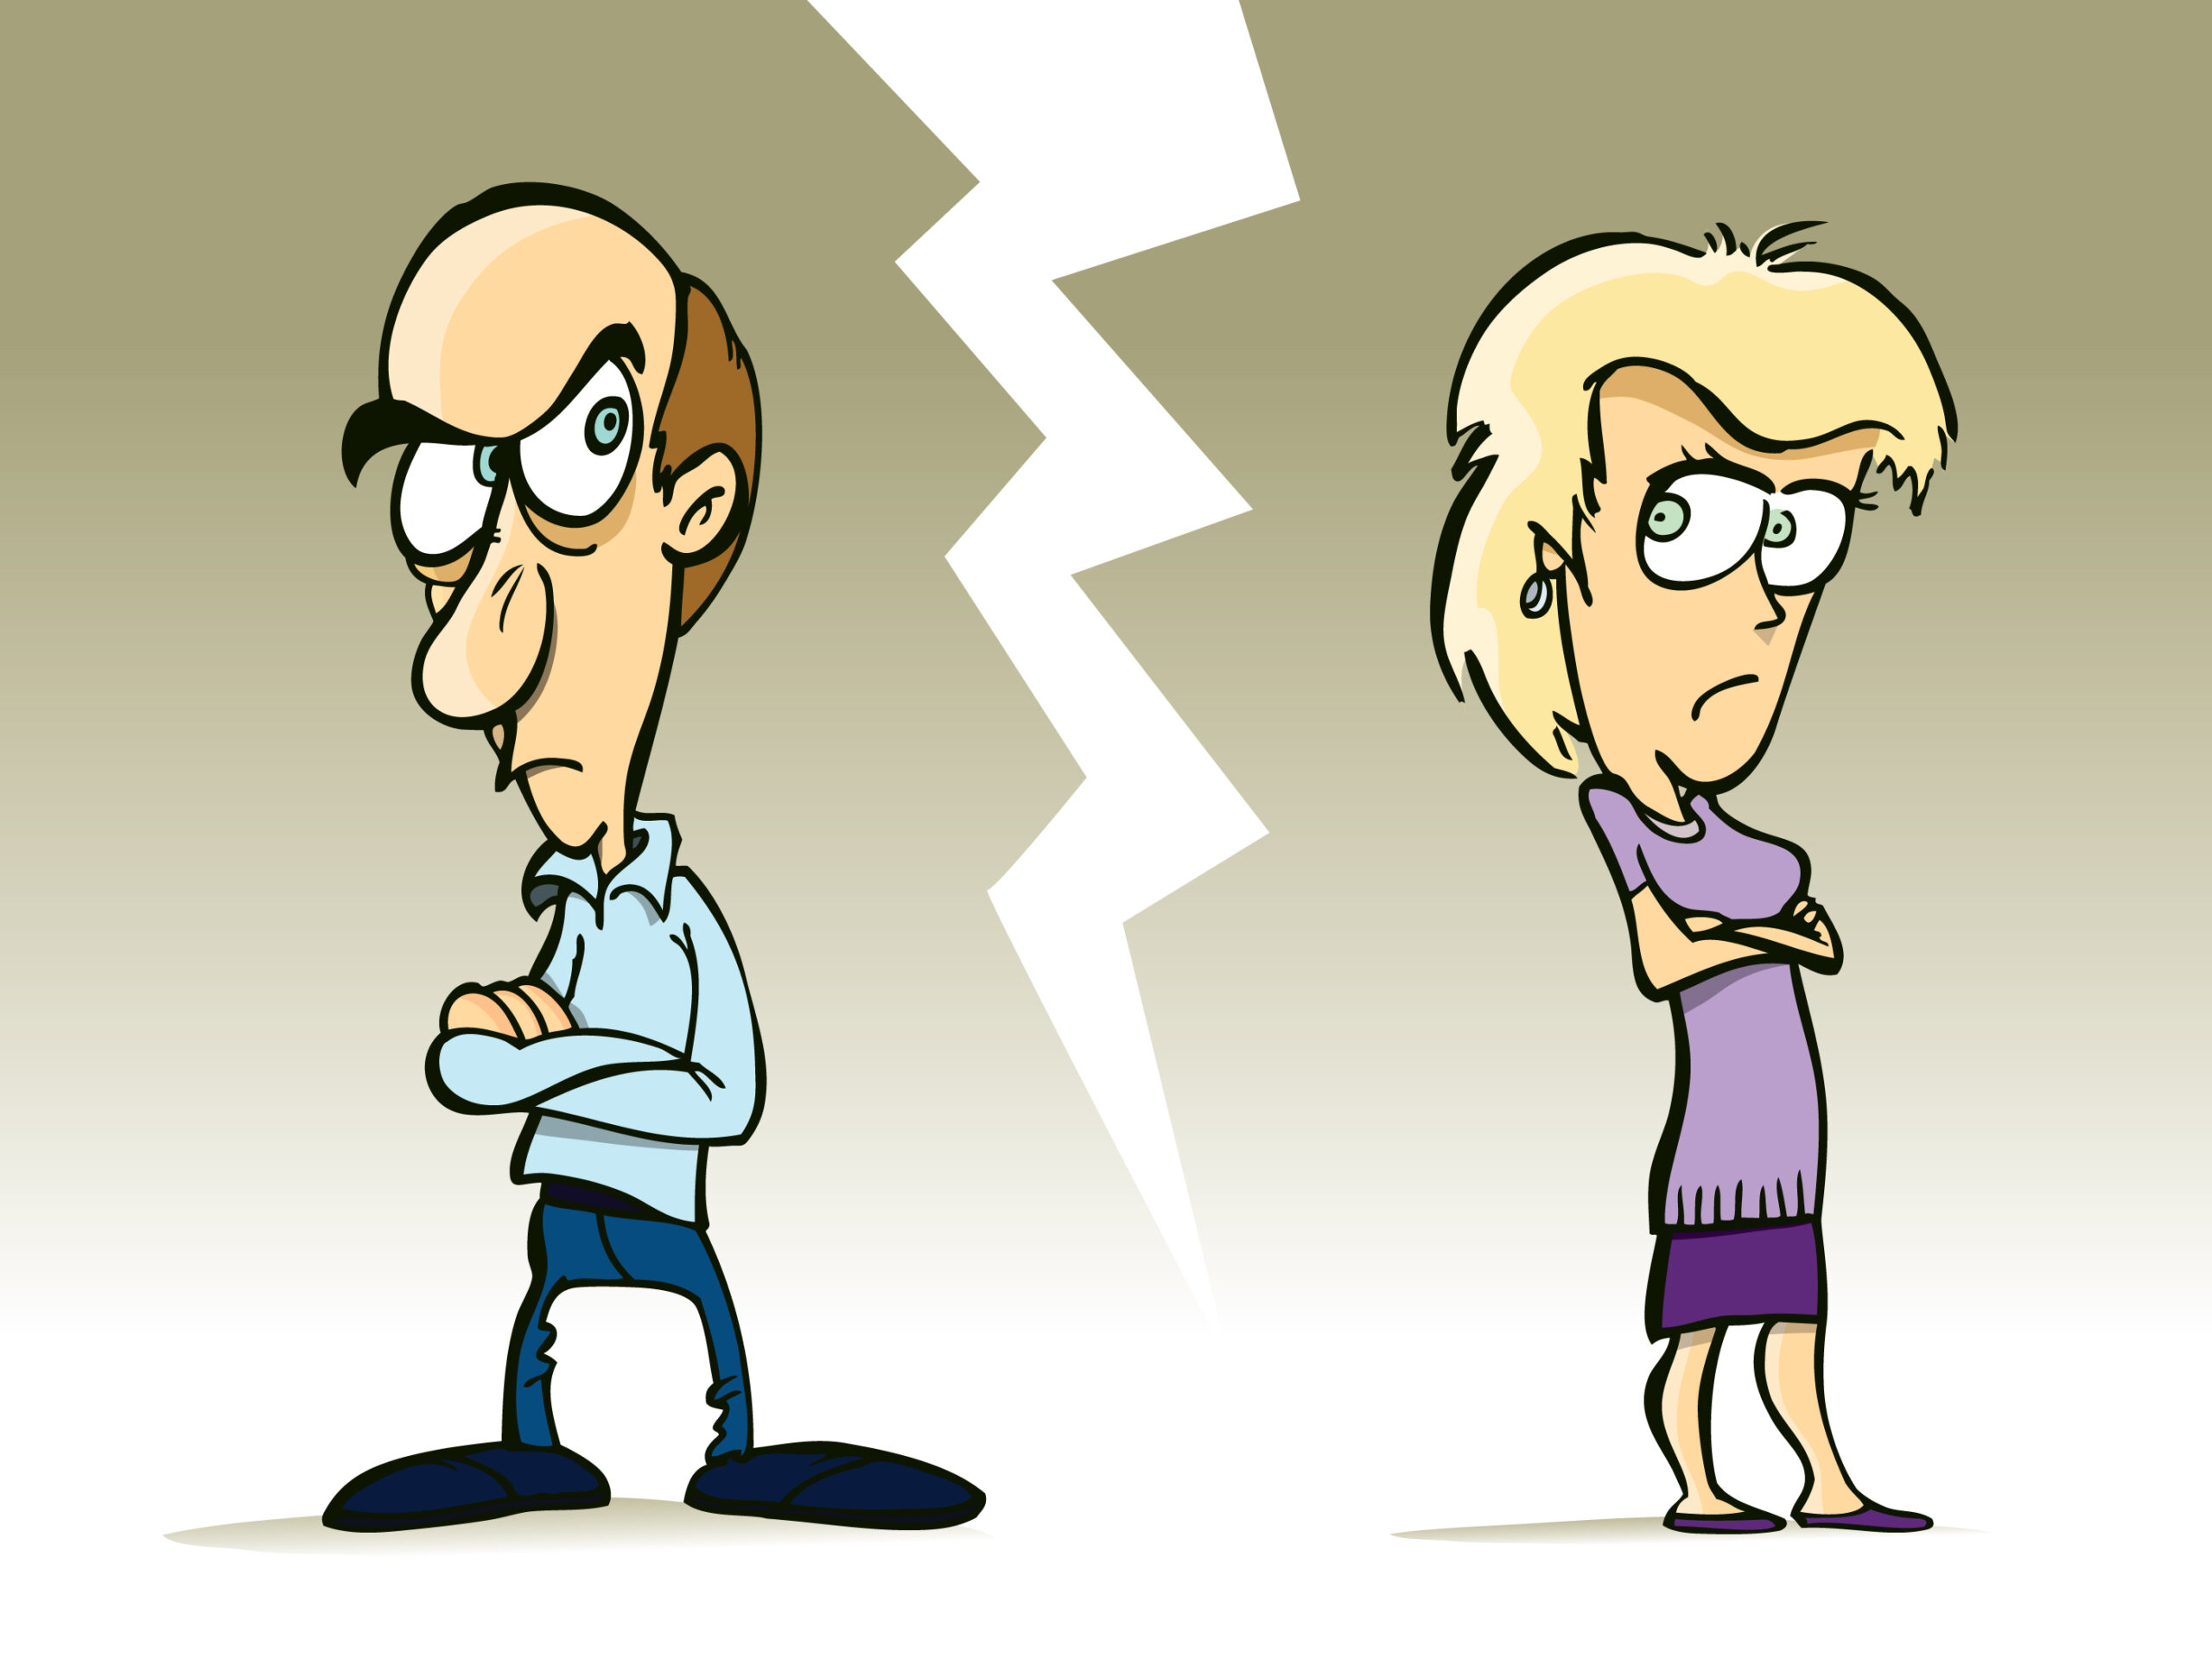 مهمترین دلایل طلاق کدام است؟